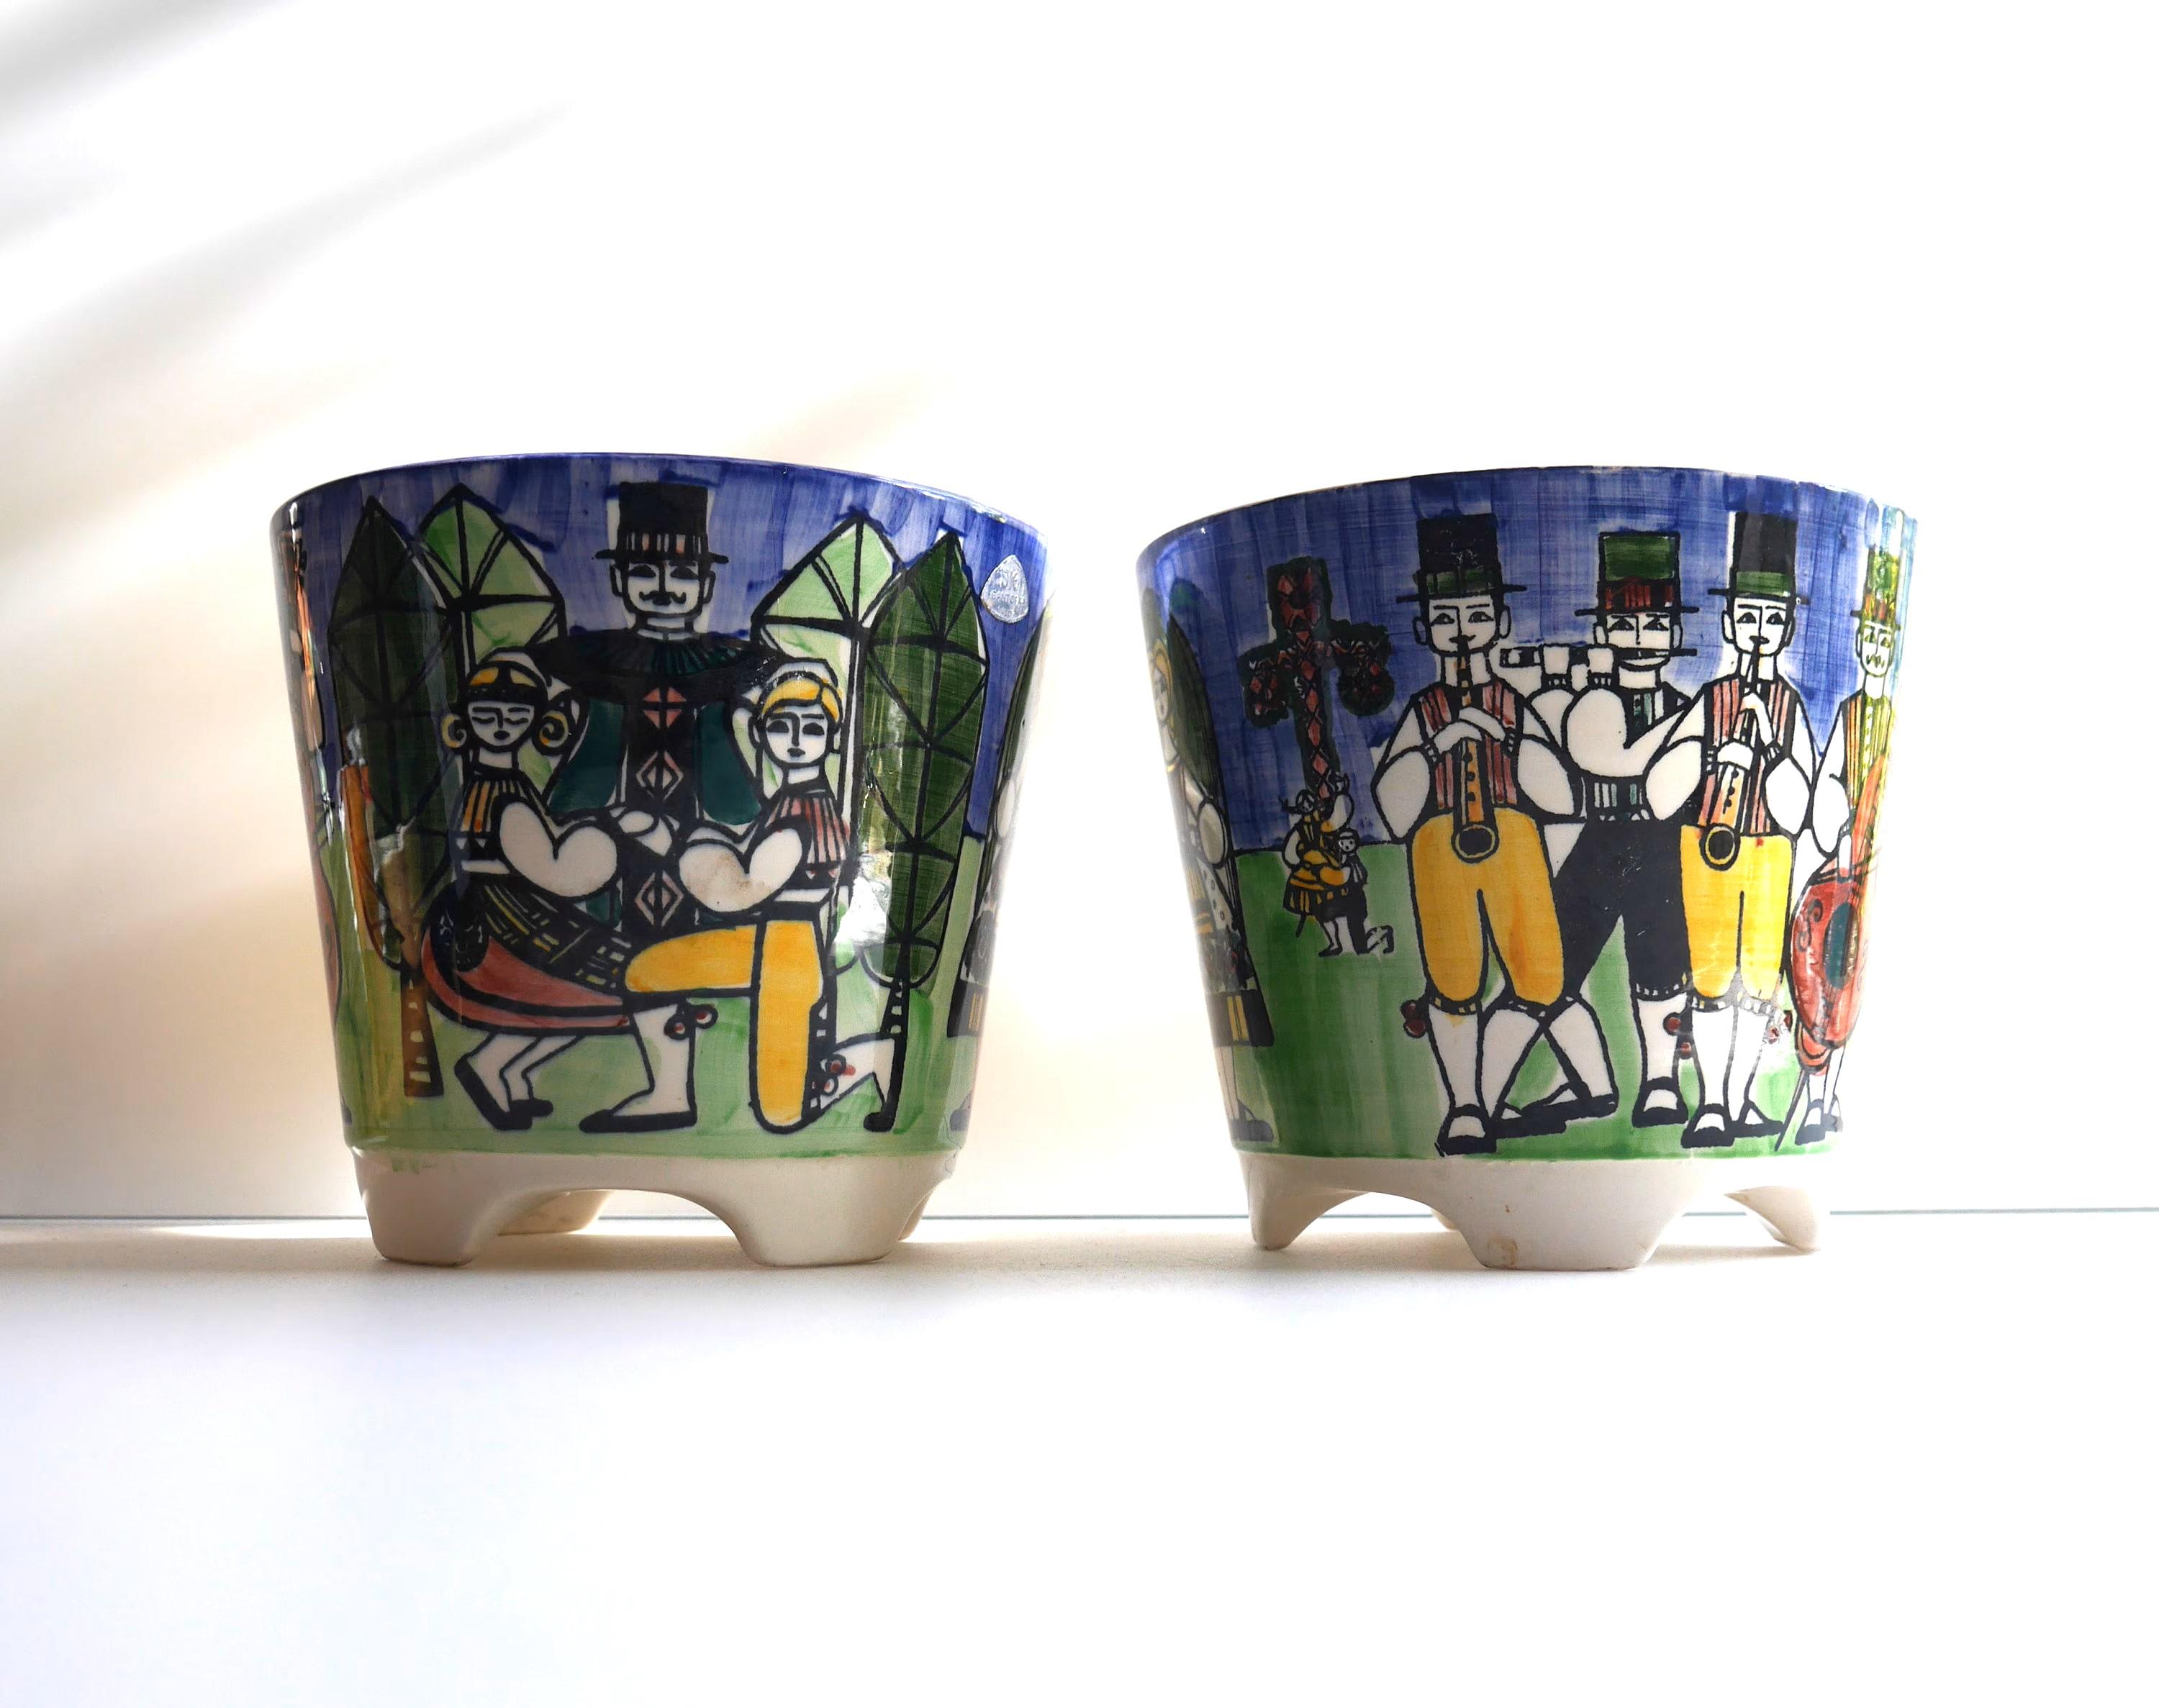 Une paire de très beaux pots de fleurs en porcelaine vintage peints à la main et réalisés par Anita Nylund pour JIE Keramik, Suède. Ces pots ont des couleurs fantastiques représentant une danse traditionnelle suédoise de la Saint-Jean. Des hommes et